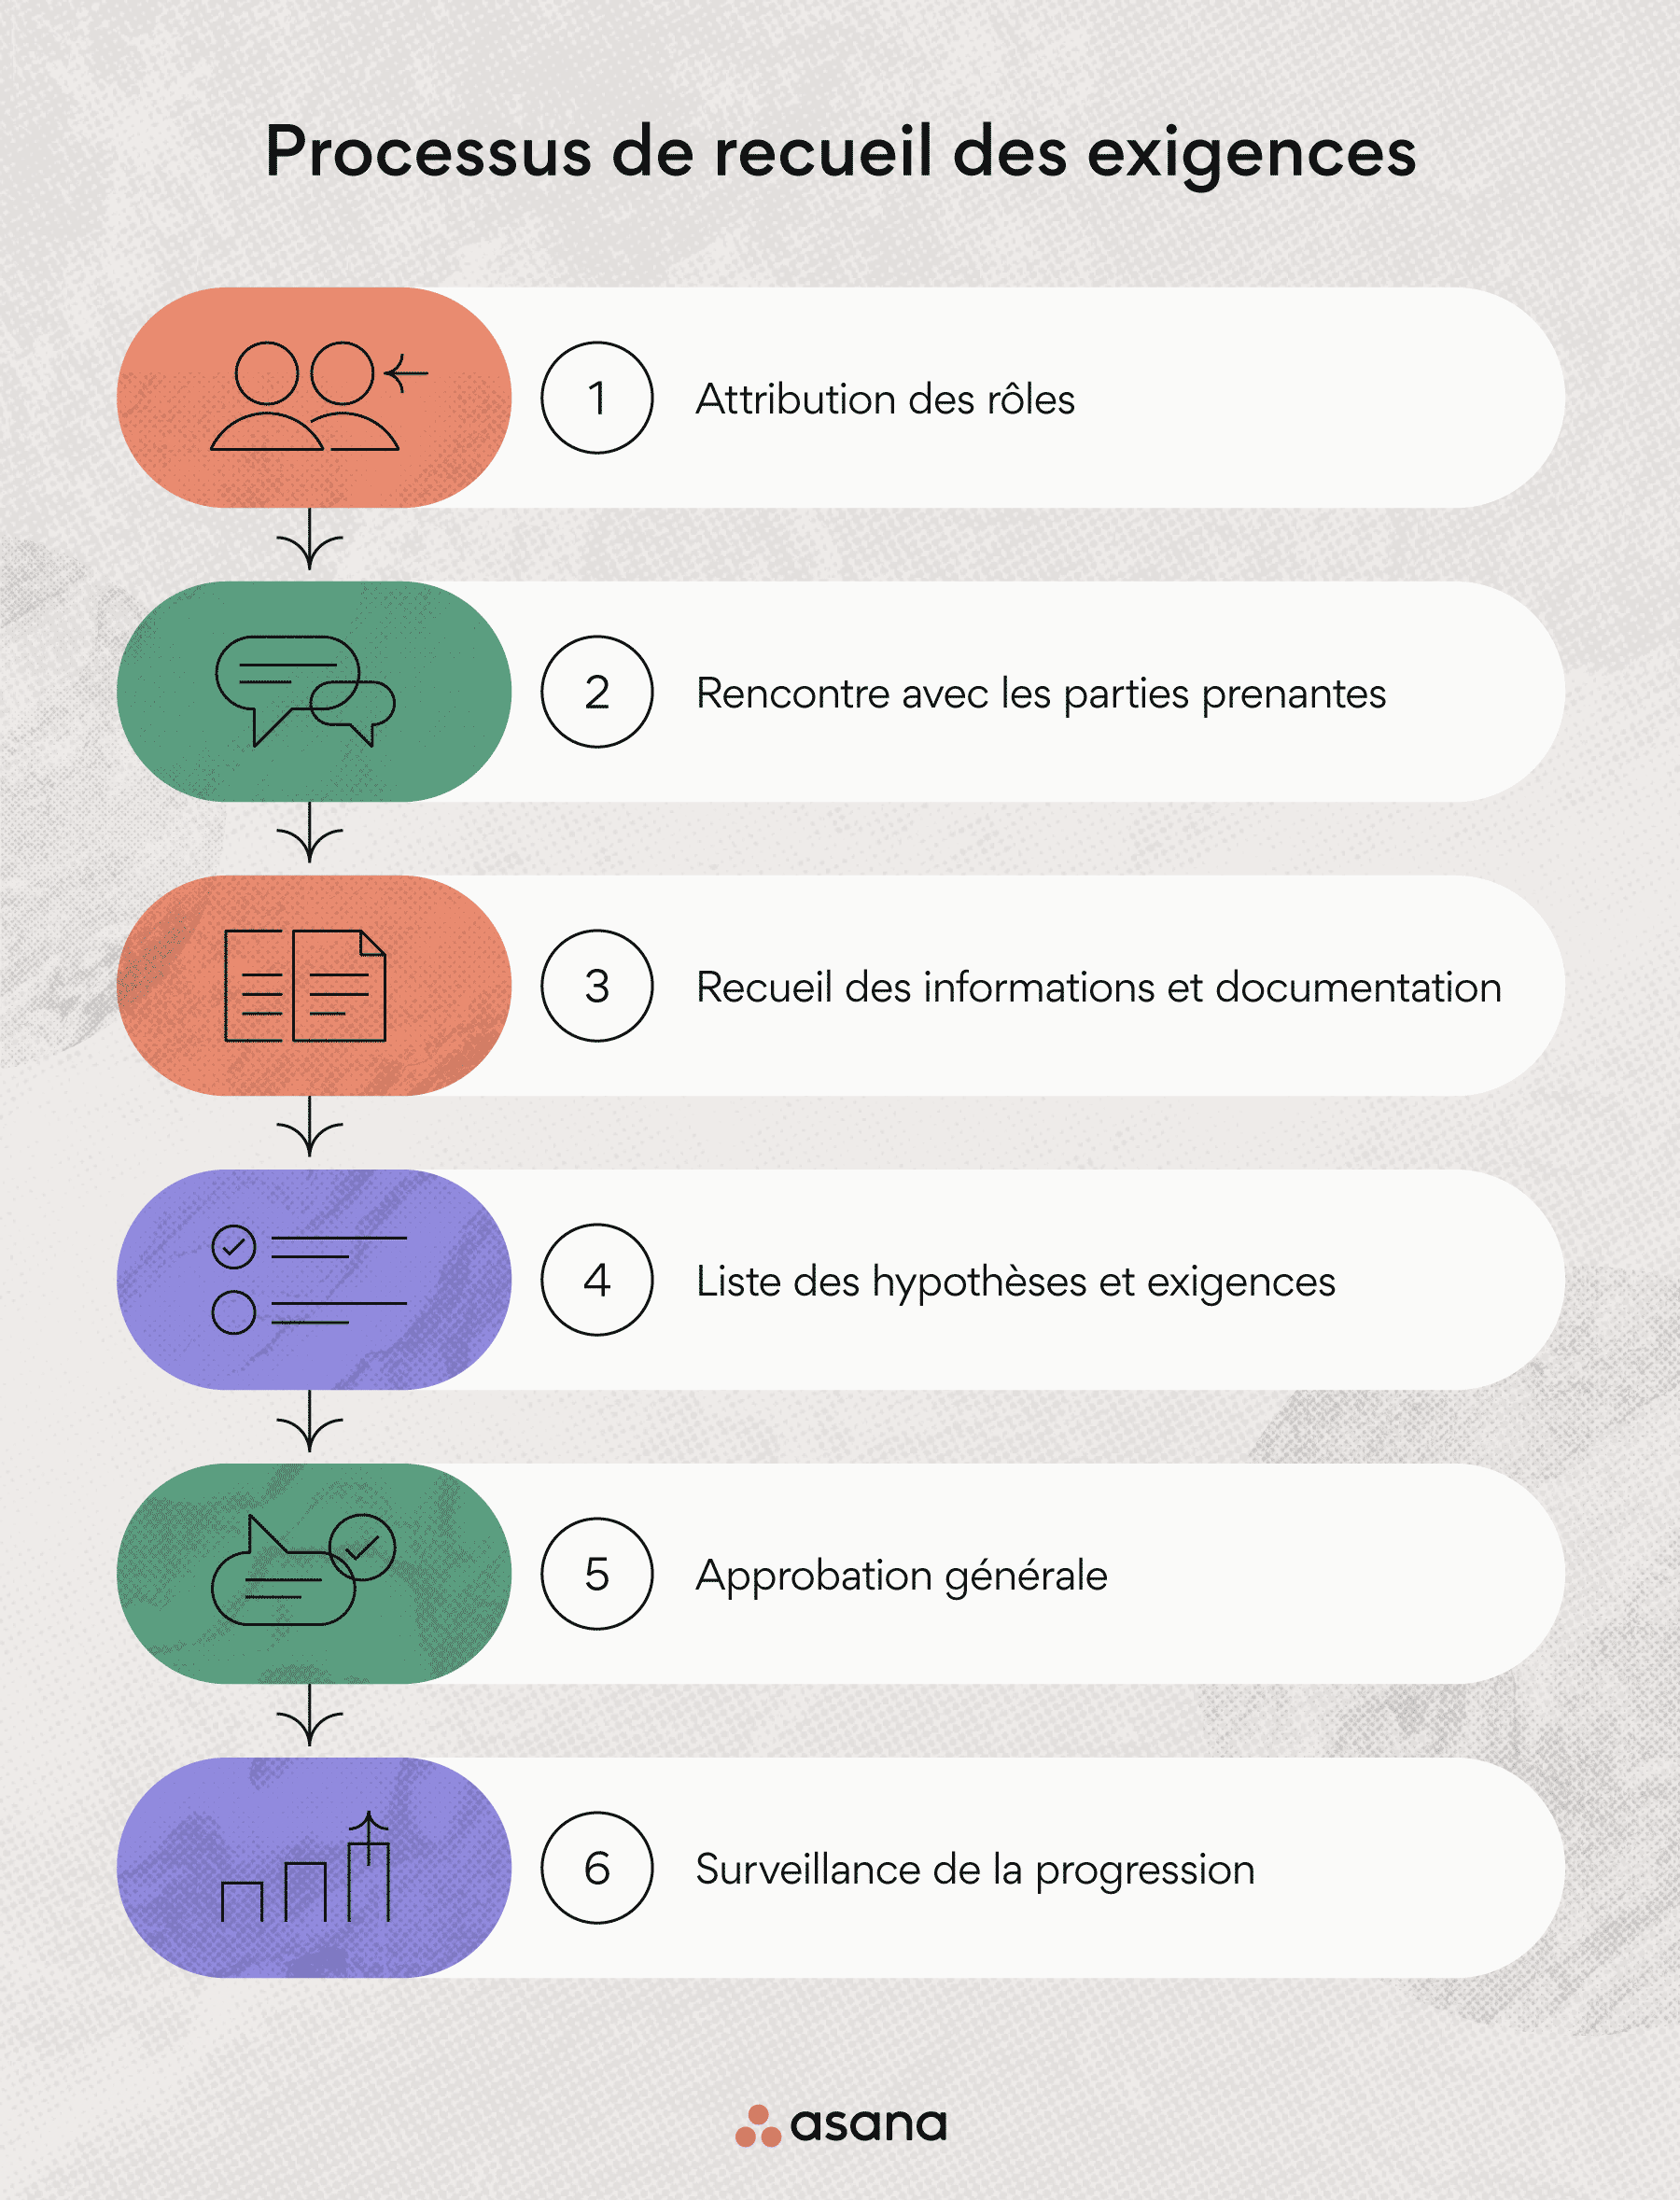 Les 6 étapes du recueil des exigences